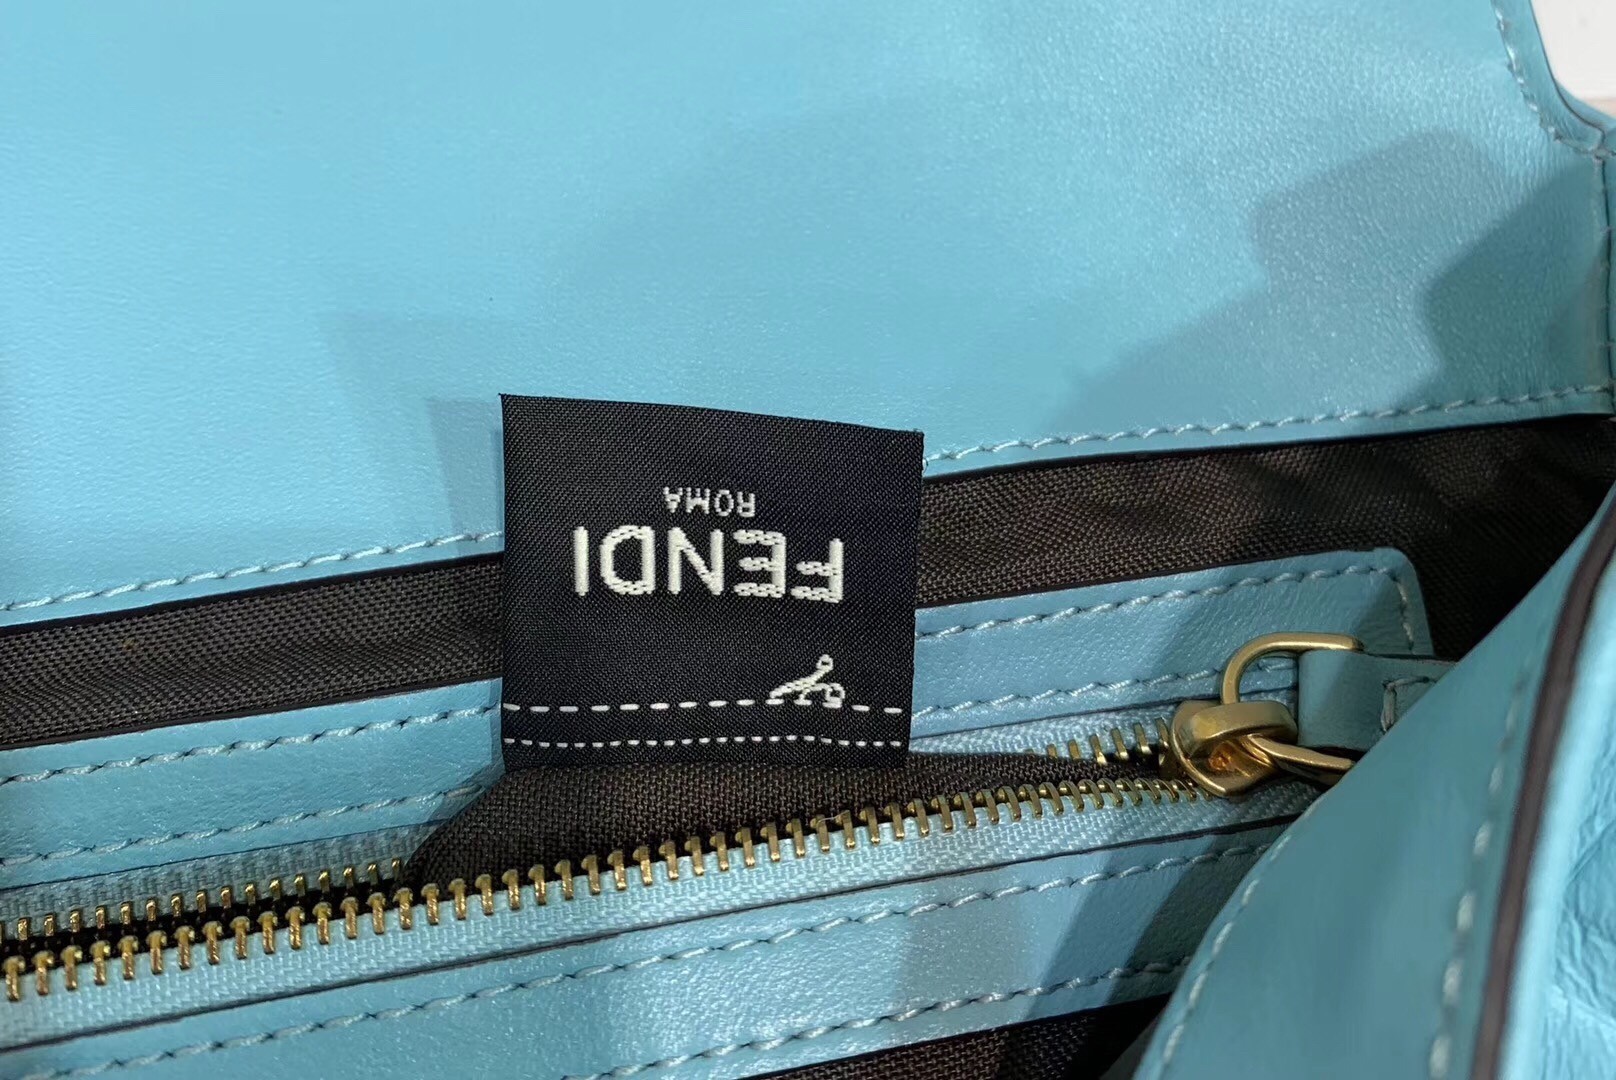 Fendi Pale Blue FF Motif Large Baguette Bag 942